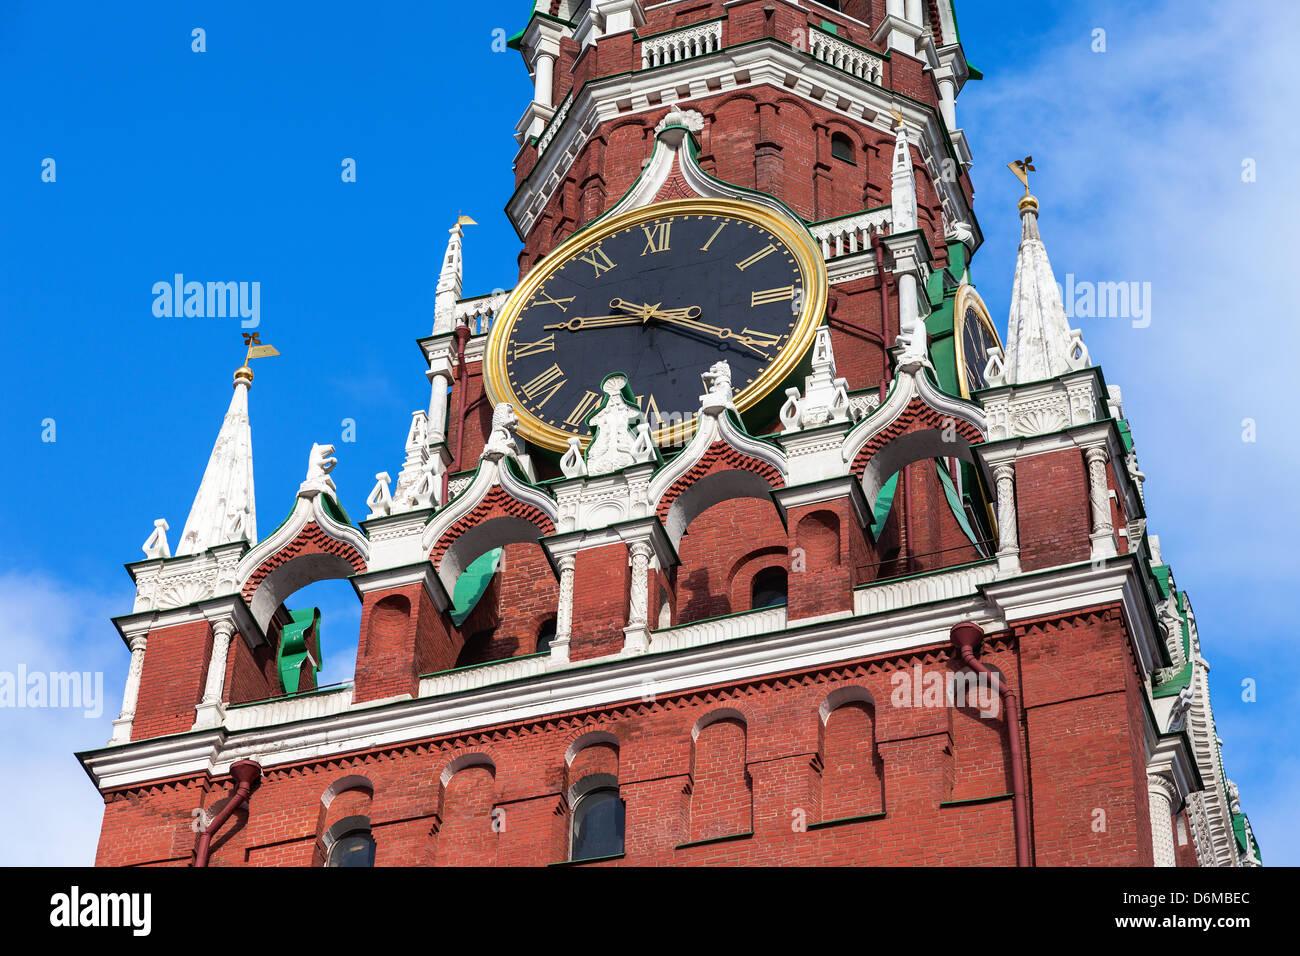 Кремлёвские куранты на Спасской башне фото